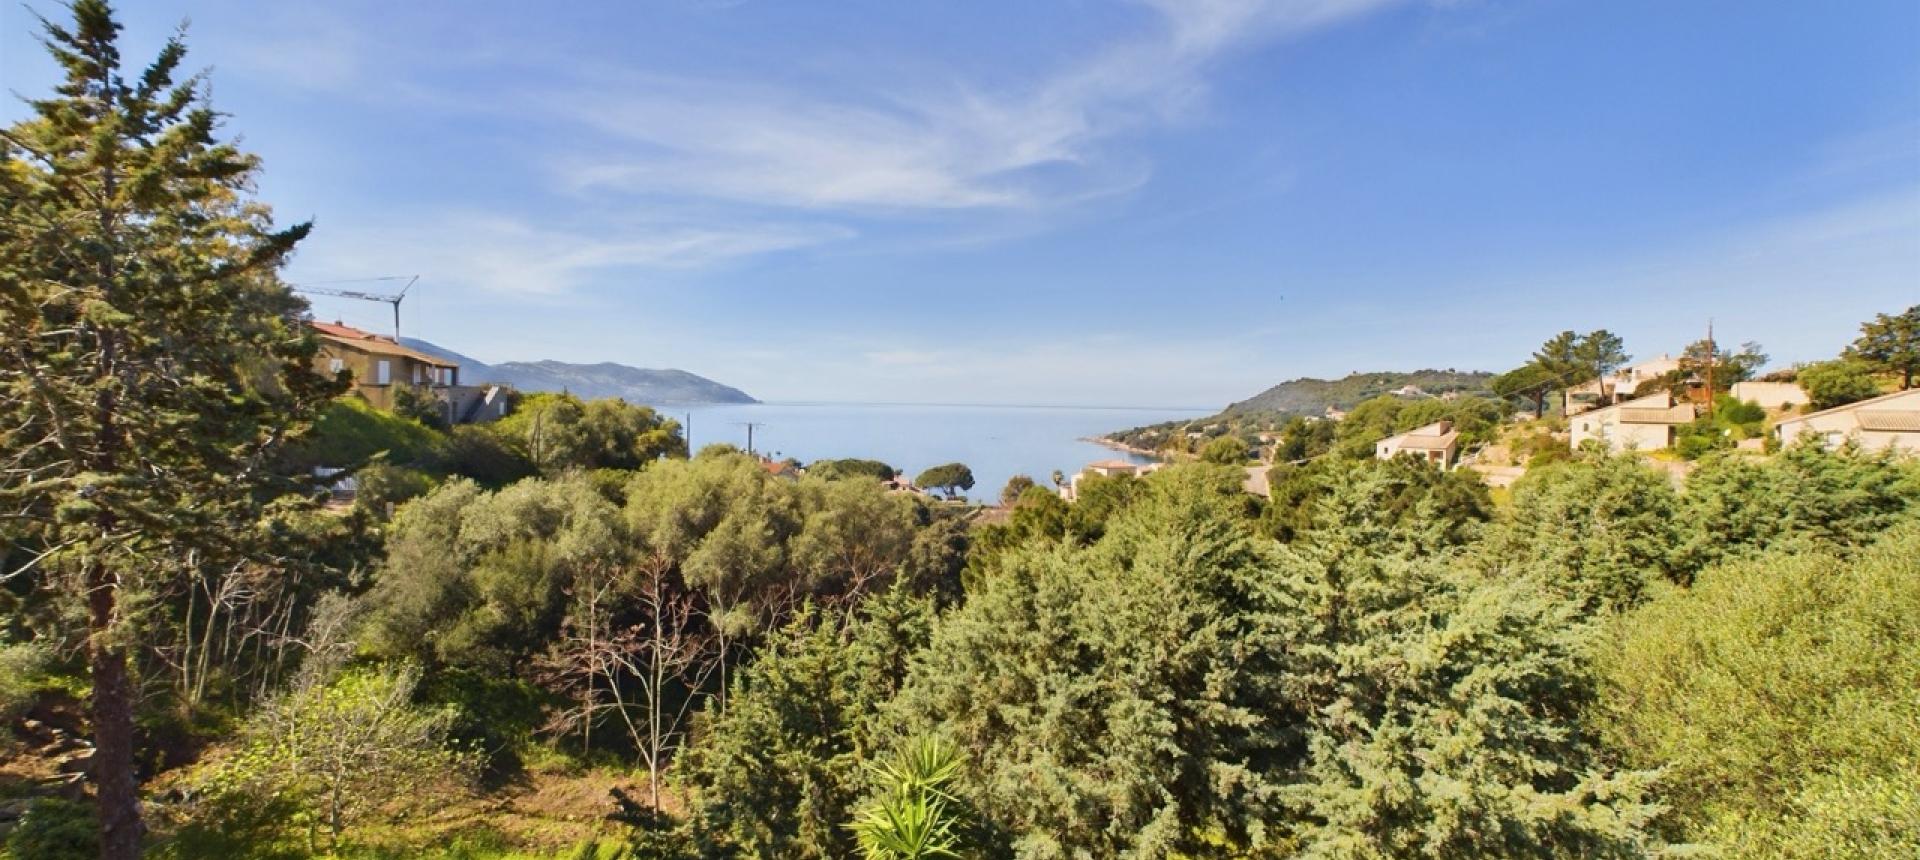 Villa F4 vue mer à vendre à Tiuccia près d'Ajaccio